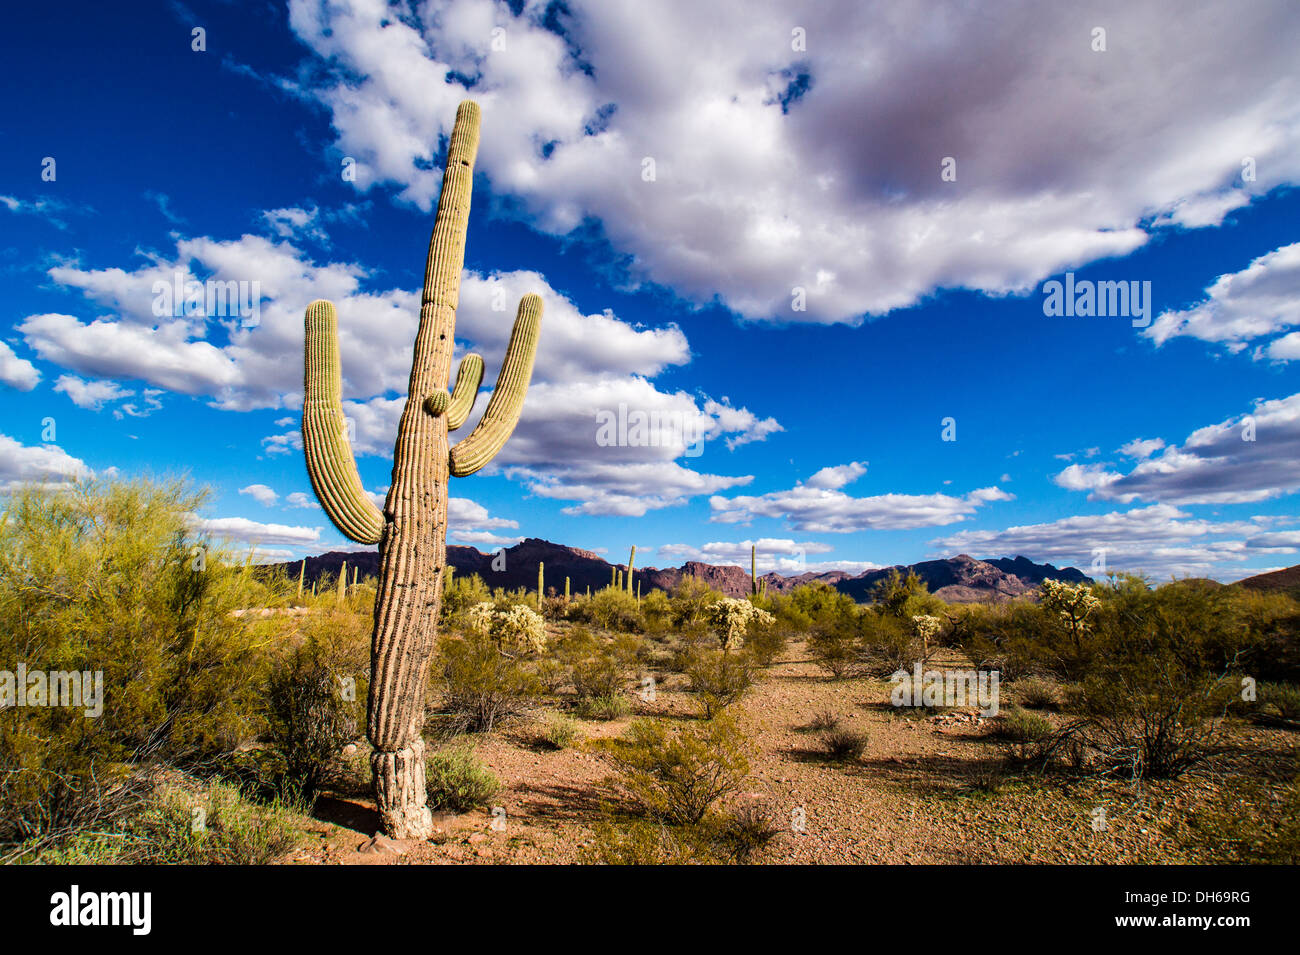 Eine narbige Saguaro-Kaktus in eine typische Landschaft der Sonora-Wüste an einem blauen Himmel Tag im Organ Pipe Cactus National Monument, Arizona Stockfoto